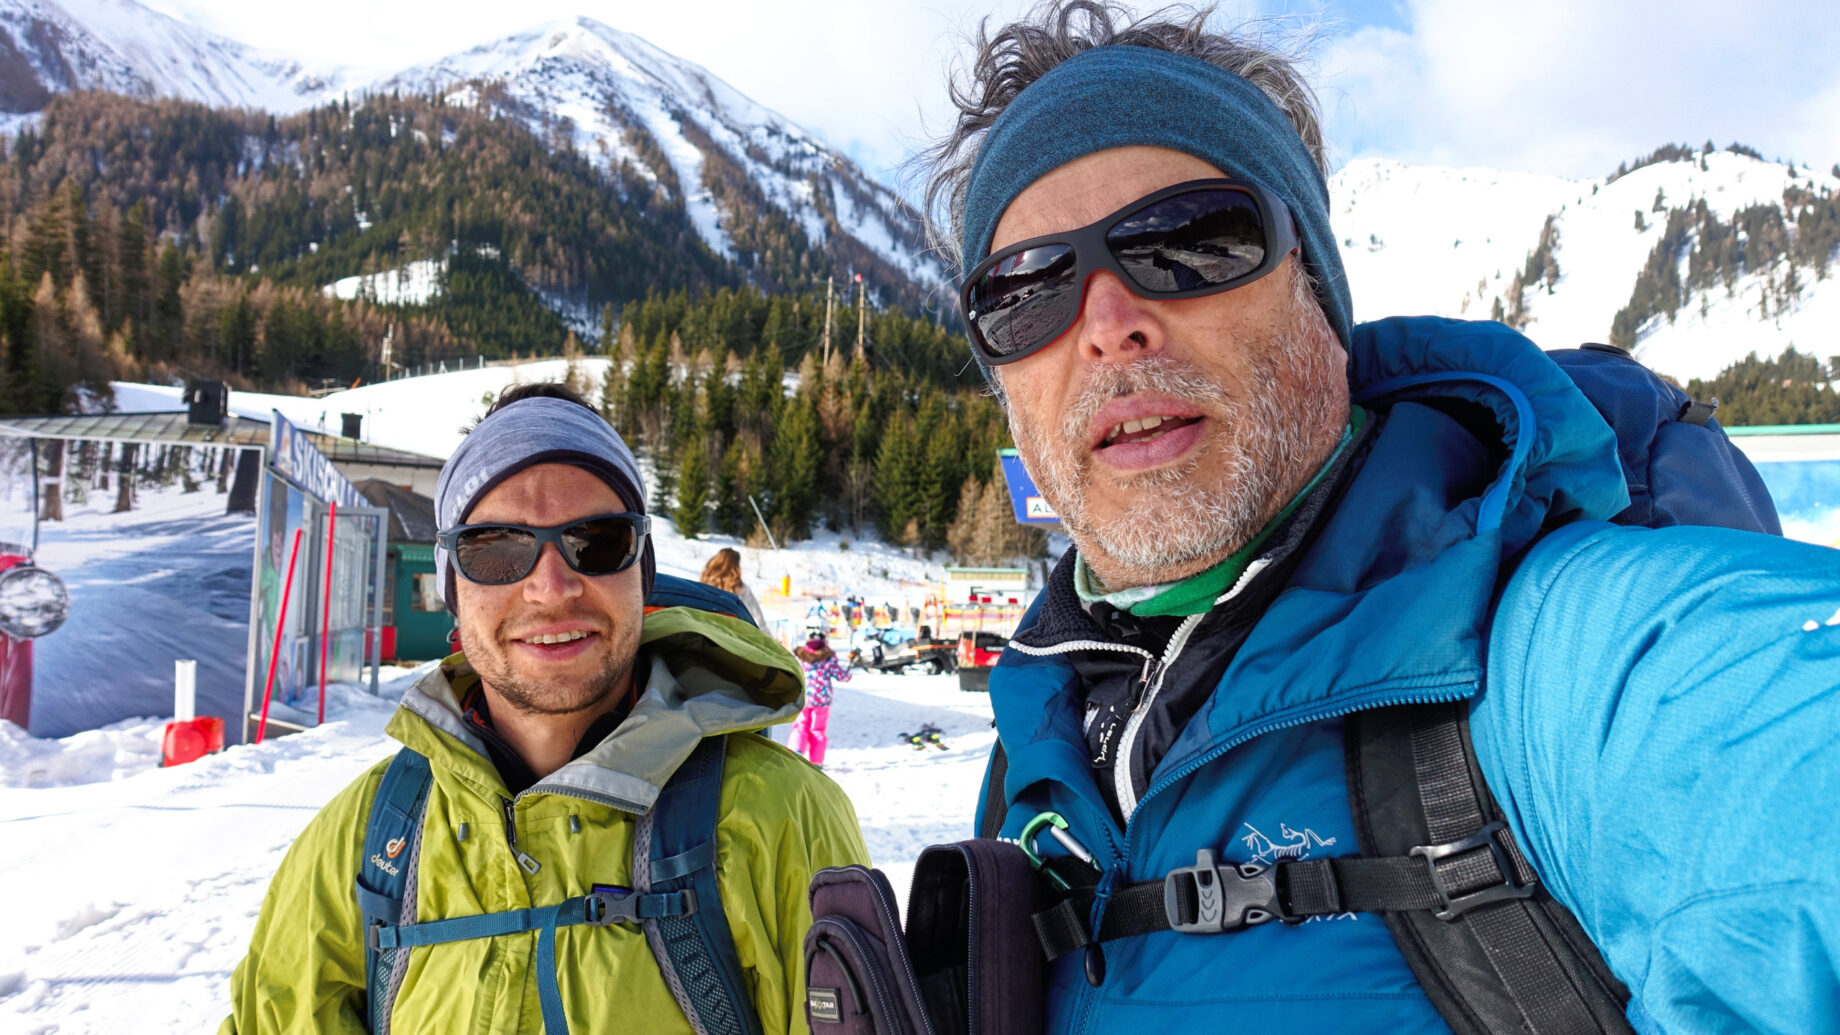 David und Martin am Start der Skitour im Skigebiet Präbichl. Foto: Martin Heppner